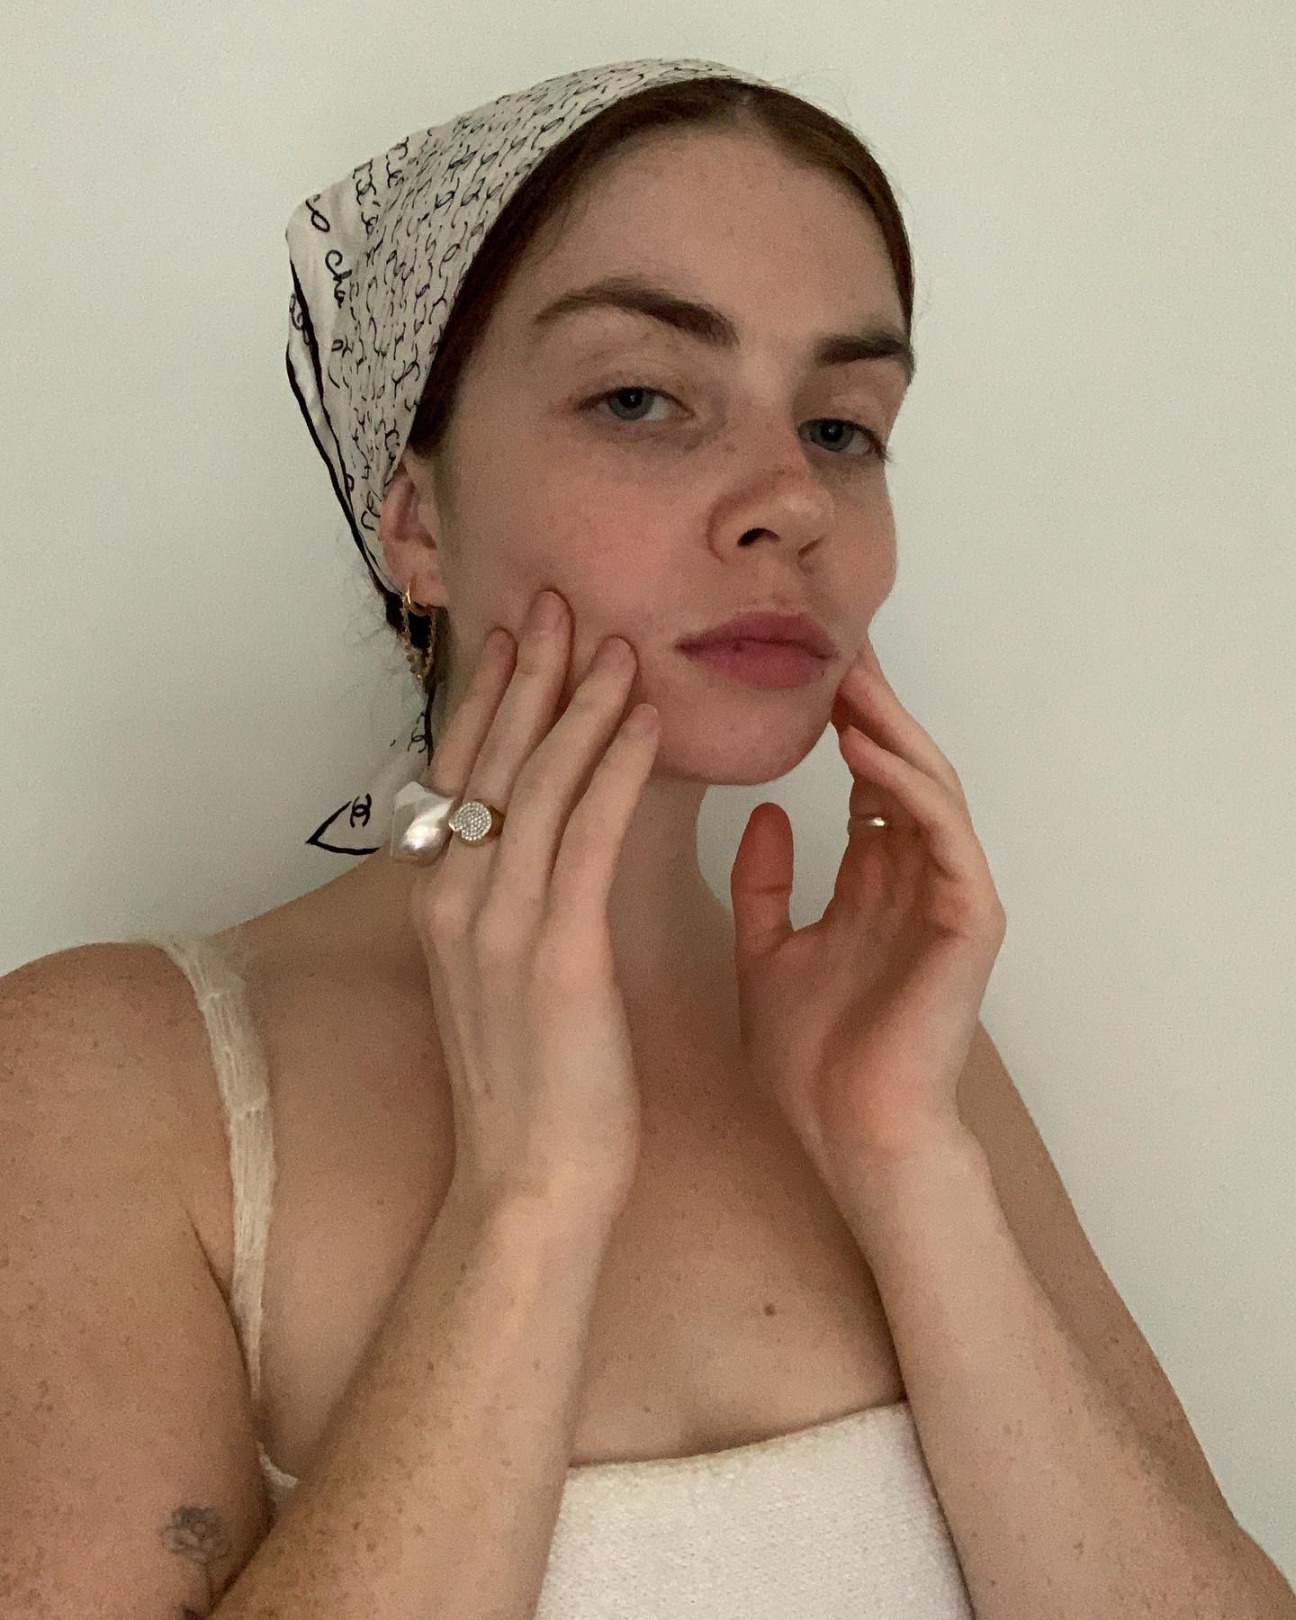 Marianne Theodorsen'den Irma Oganova'ya Haftanın Güzellik Instagramları